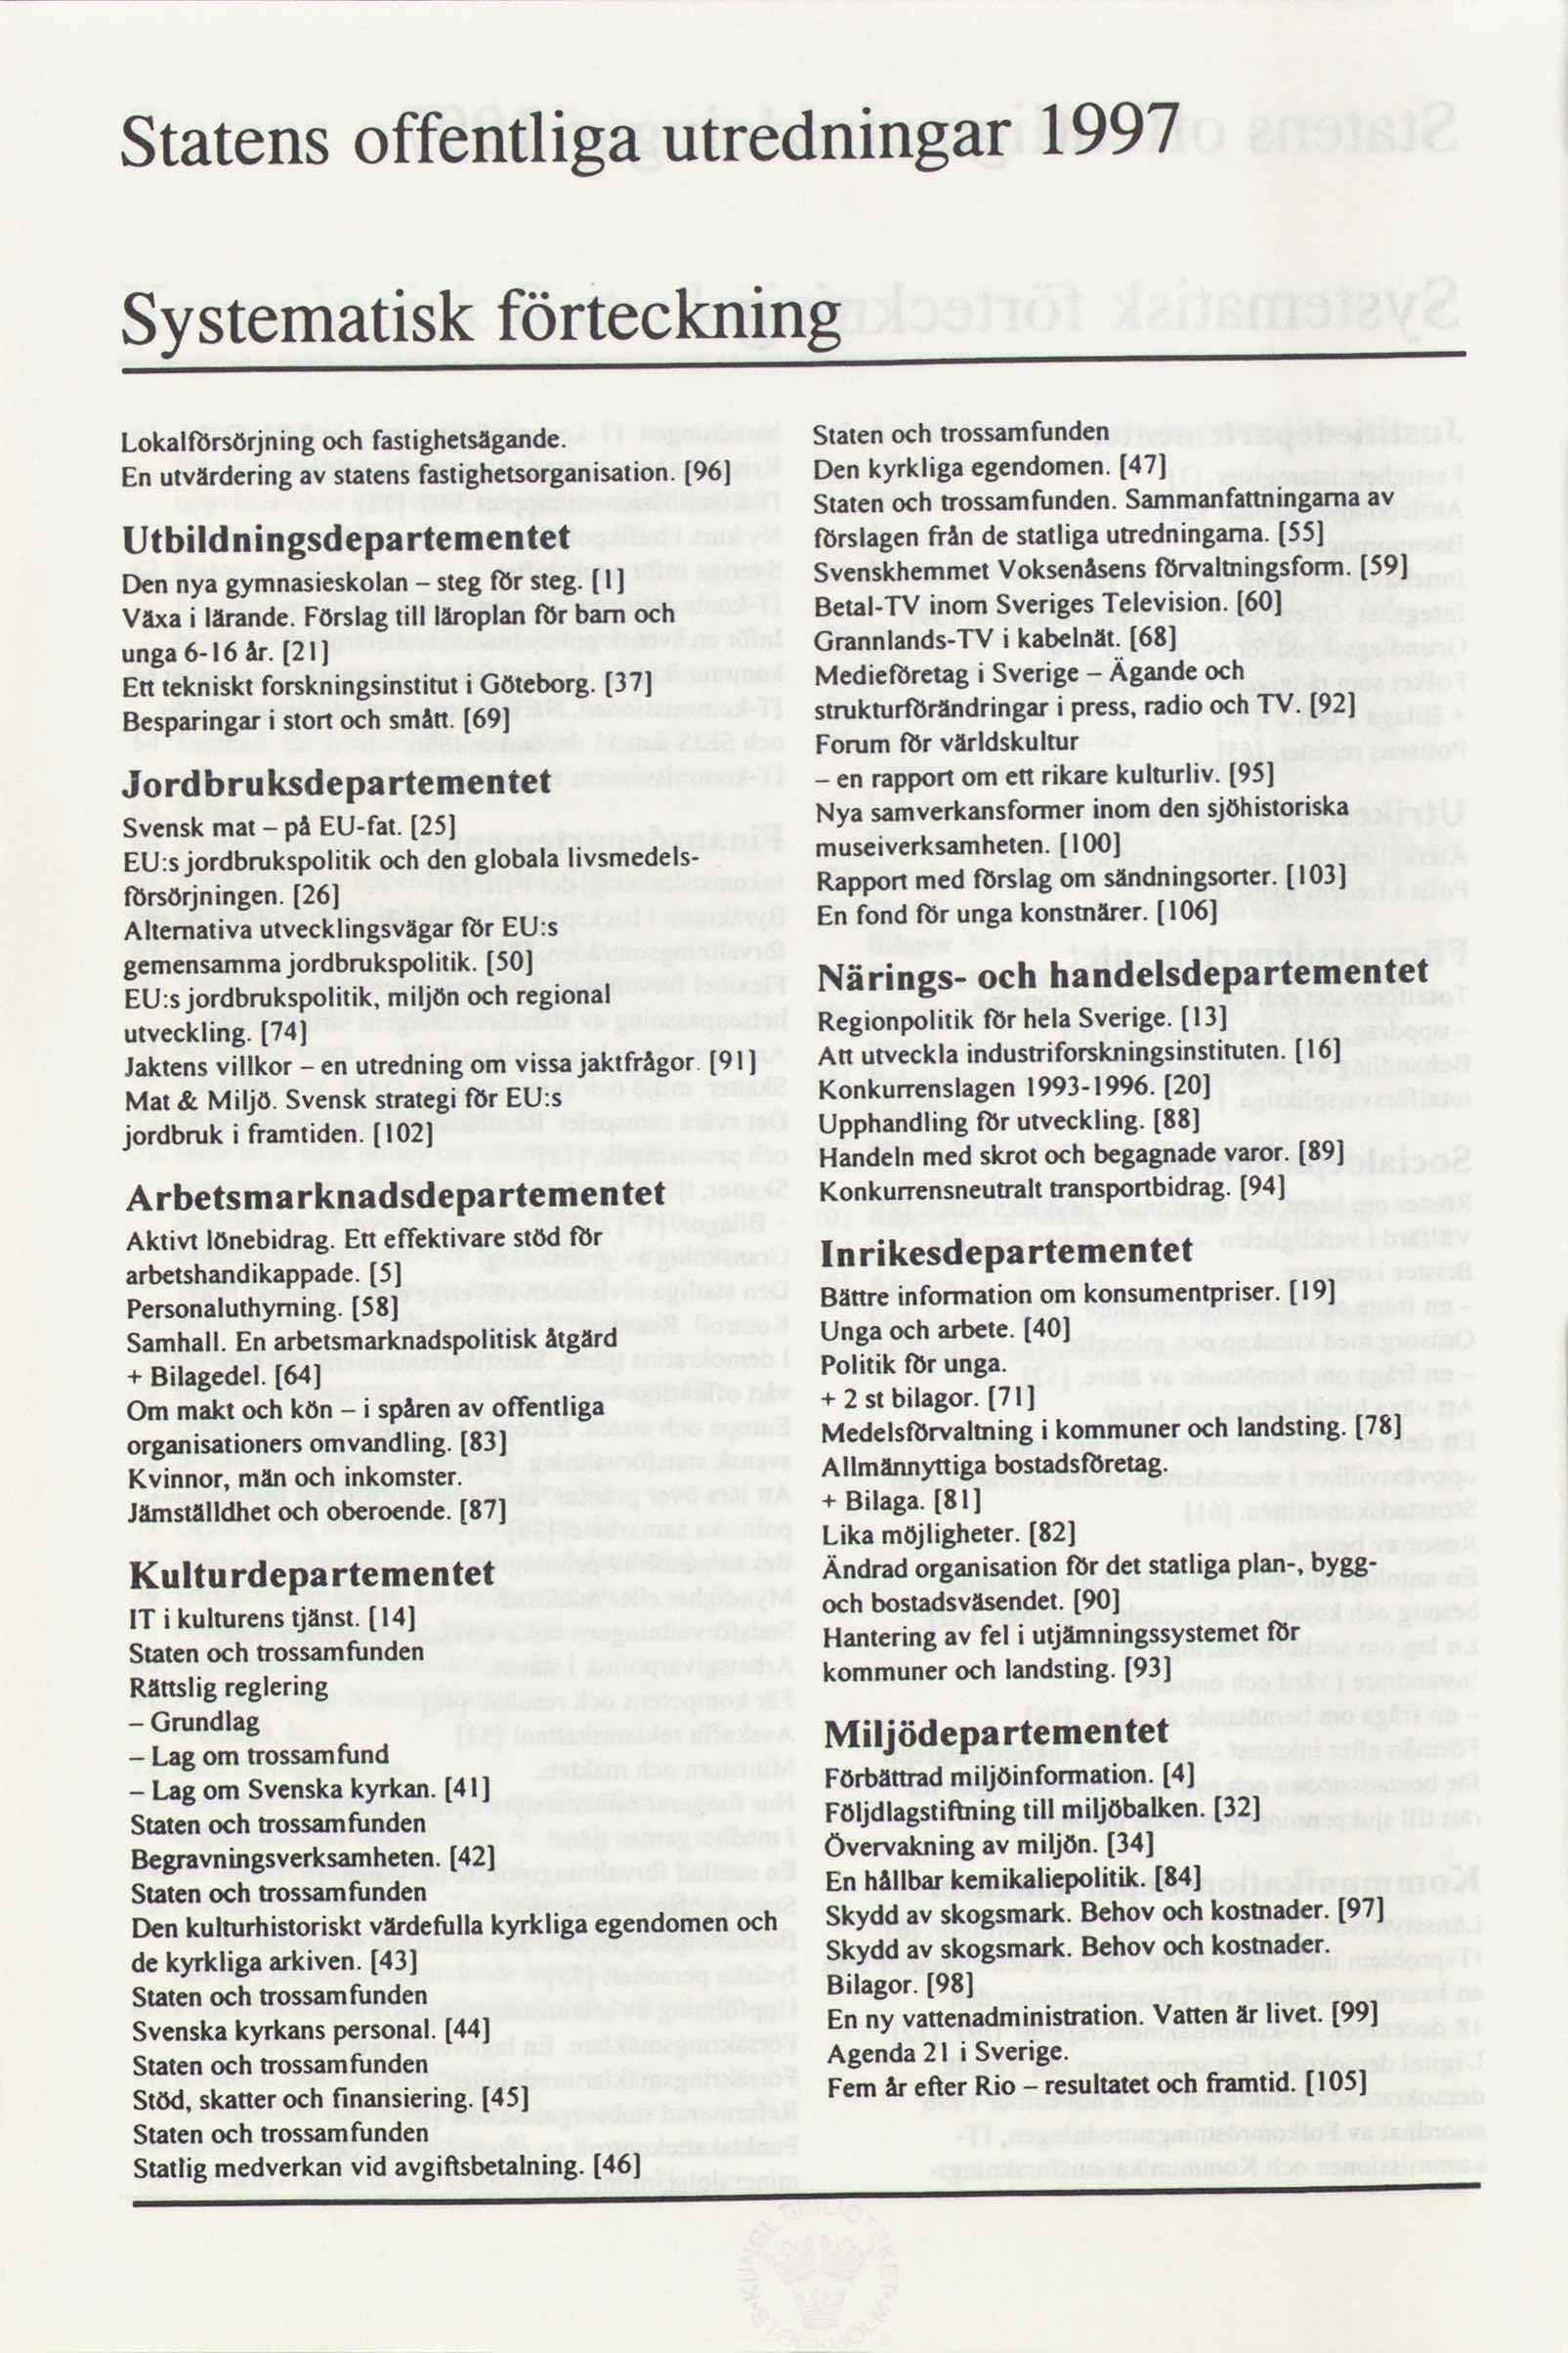 1997 utredningar offentliga Statens förteckning Systematisk ochtrossamfunden Staten fastighetsägande. Lokalfbrsörjning och 47 Denkyrkligaegendomen. 96 fastighetsorganisation.